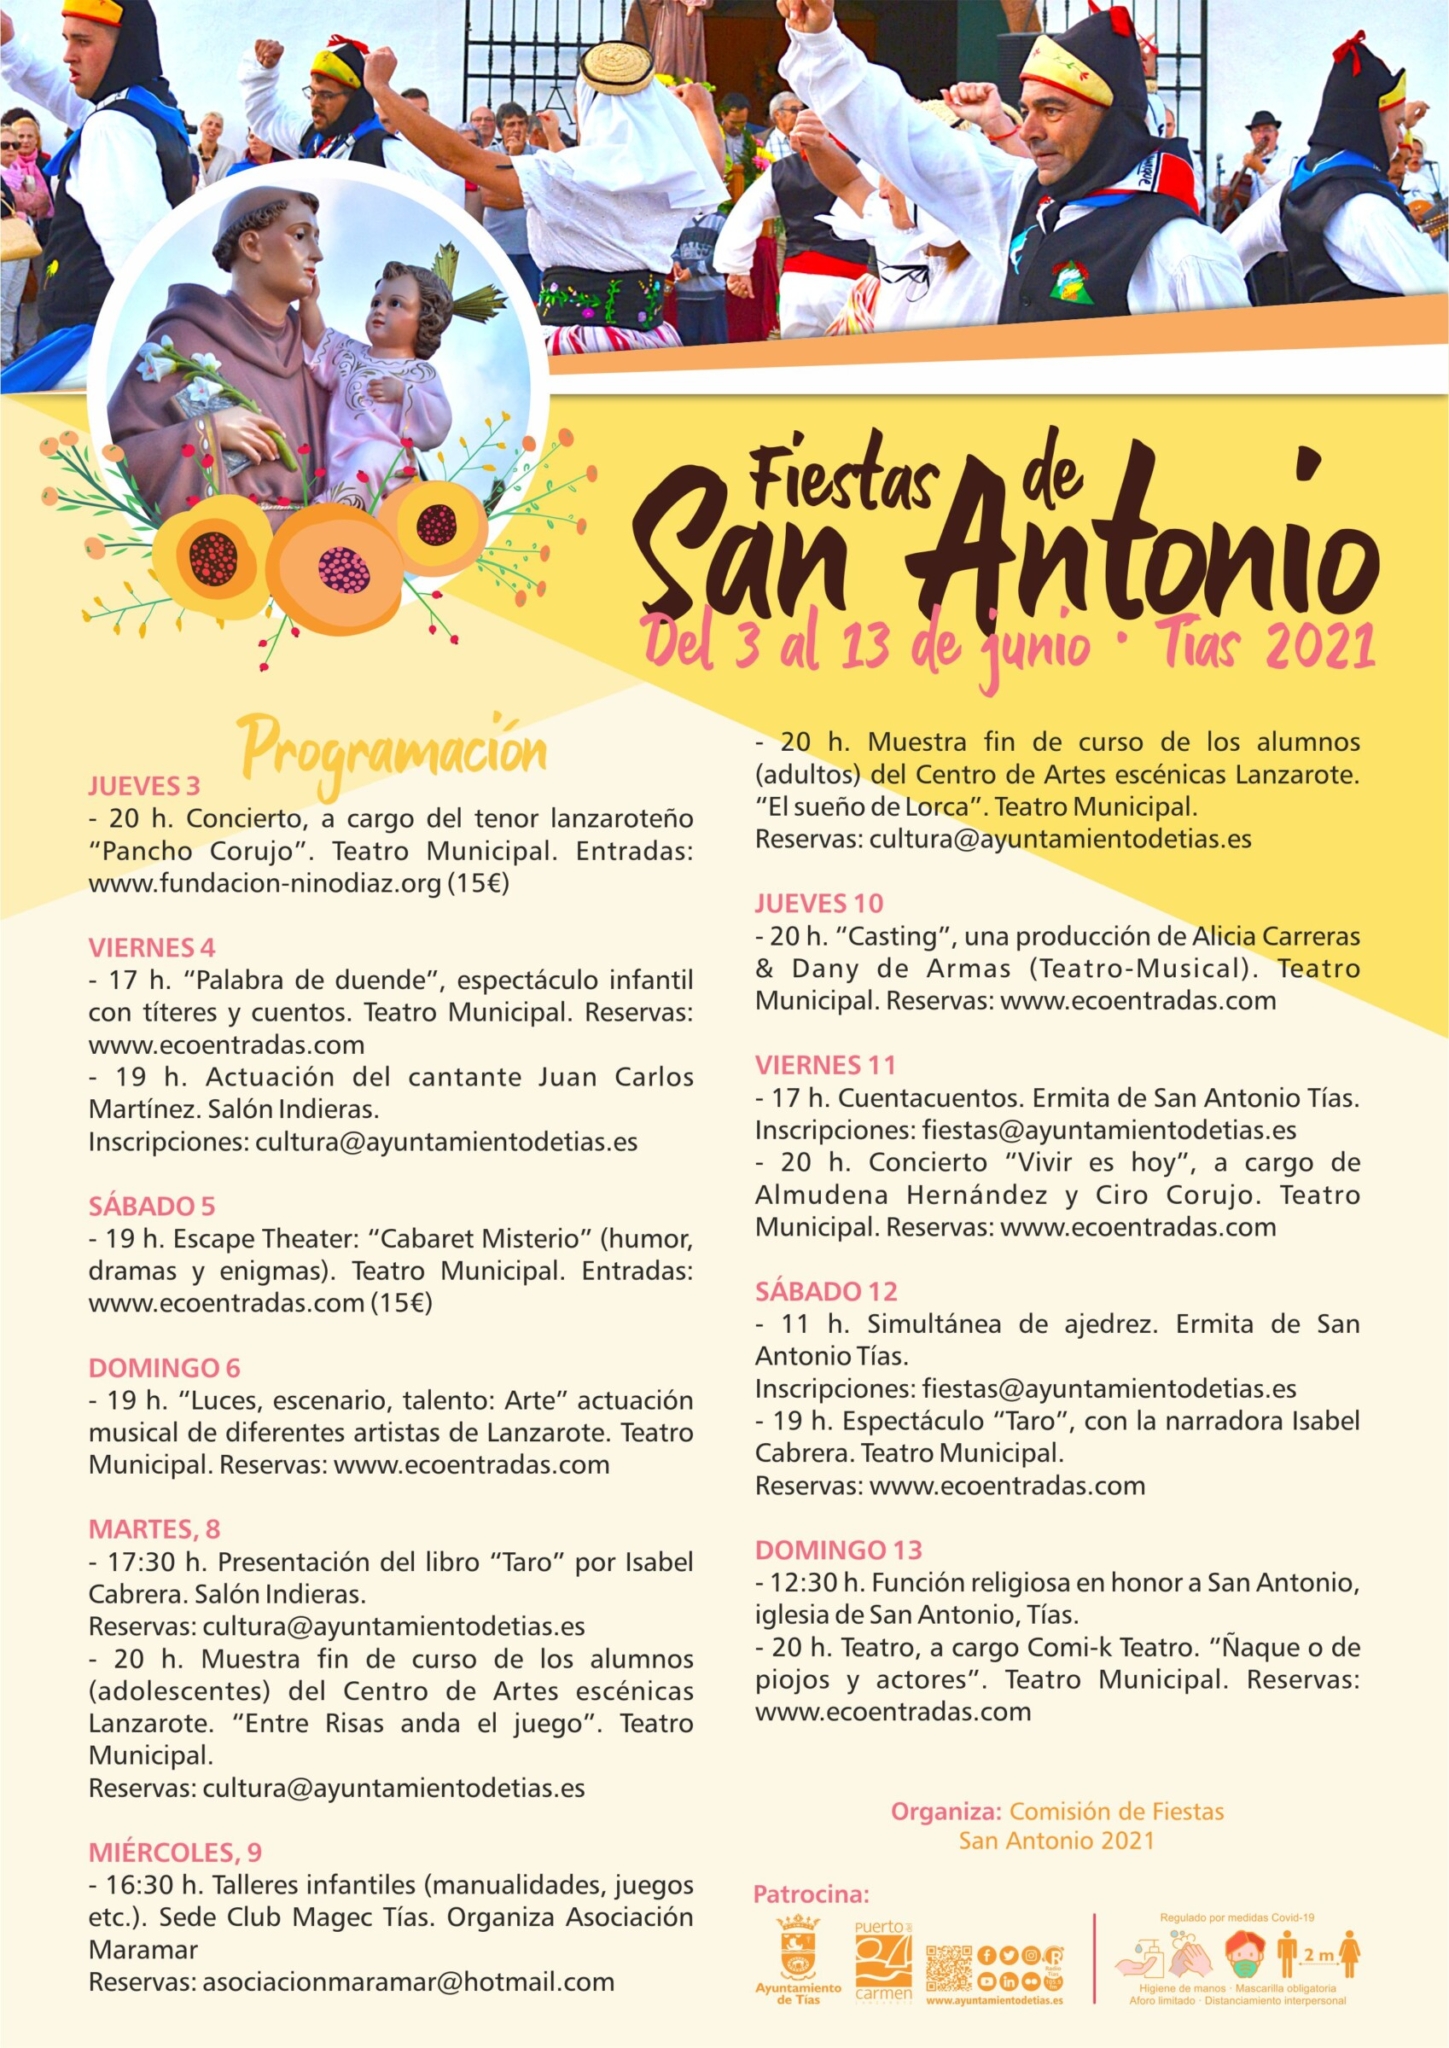 Fiestas de San Antonio en Tías con teatro, musicales y conciertos